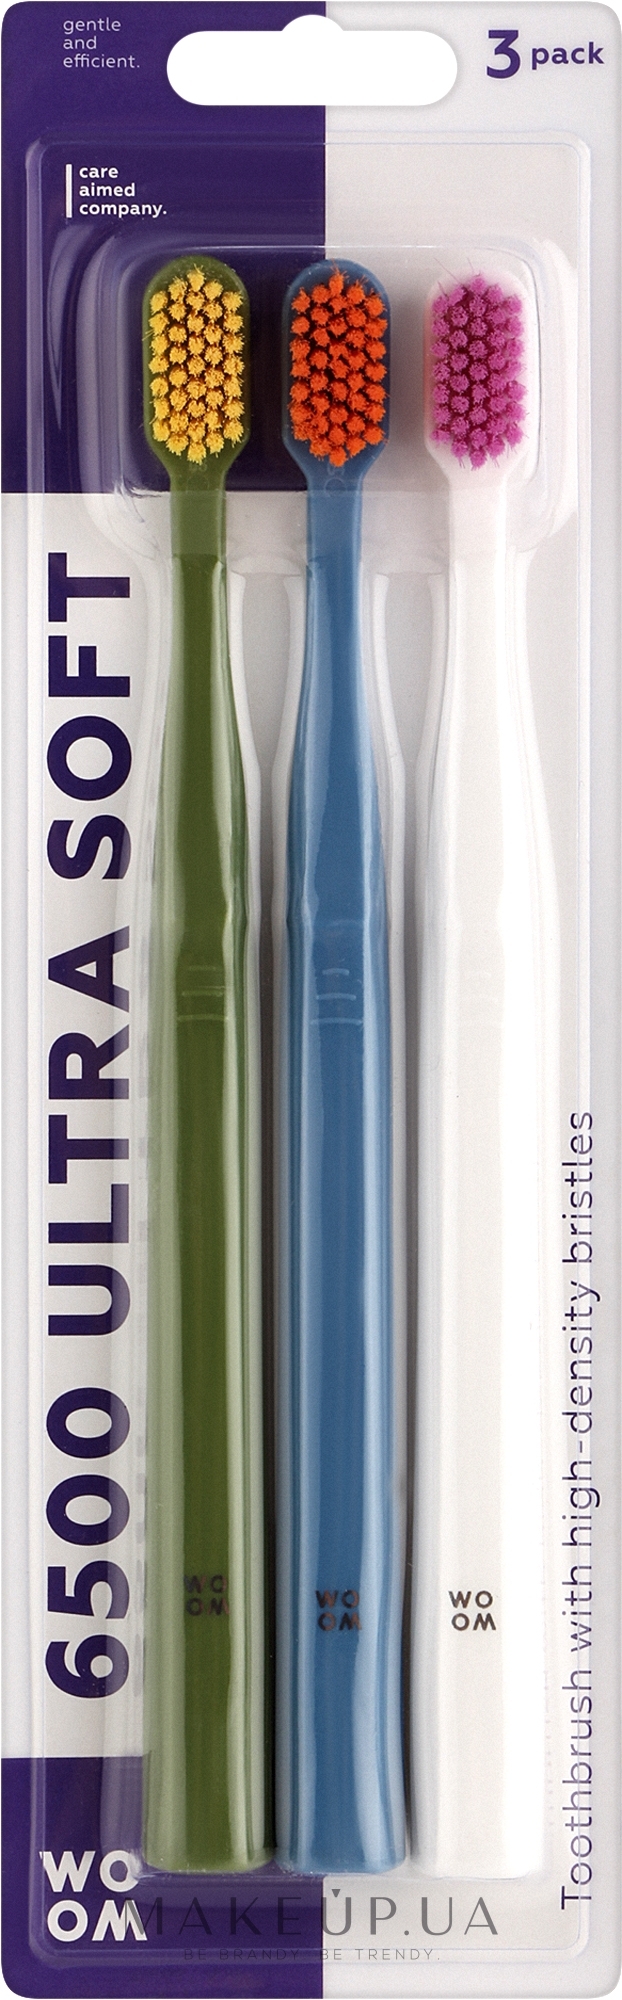 Набір зубних щіток, мікс кольорів, 3 шт. - Woom 6500 Ultra Soft — фото 3шт